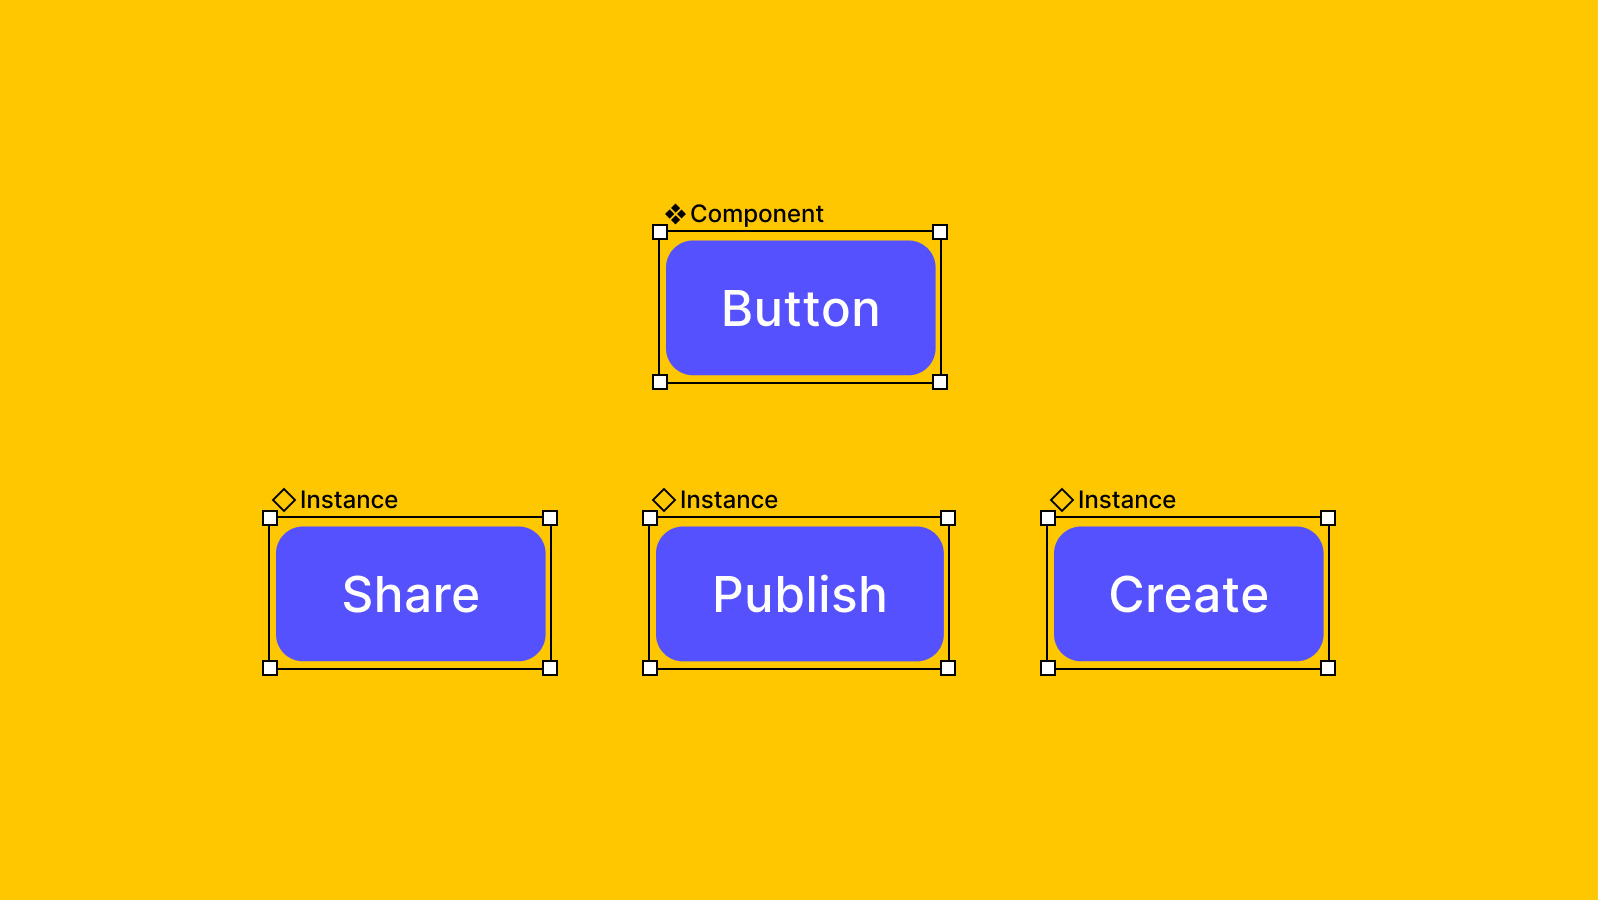 Imagem com fundo em amarelo, contendo quatro botões, sendo um deles o componentes mestre e os outros três, suas instâncias.